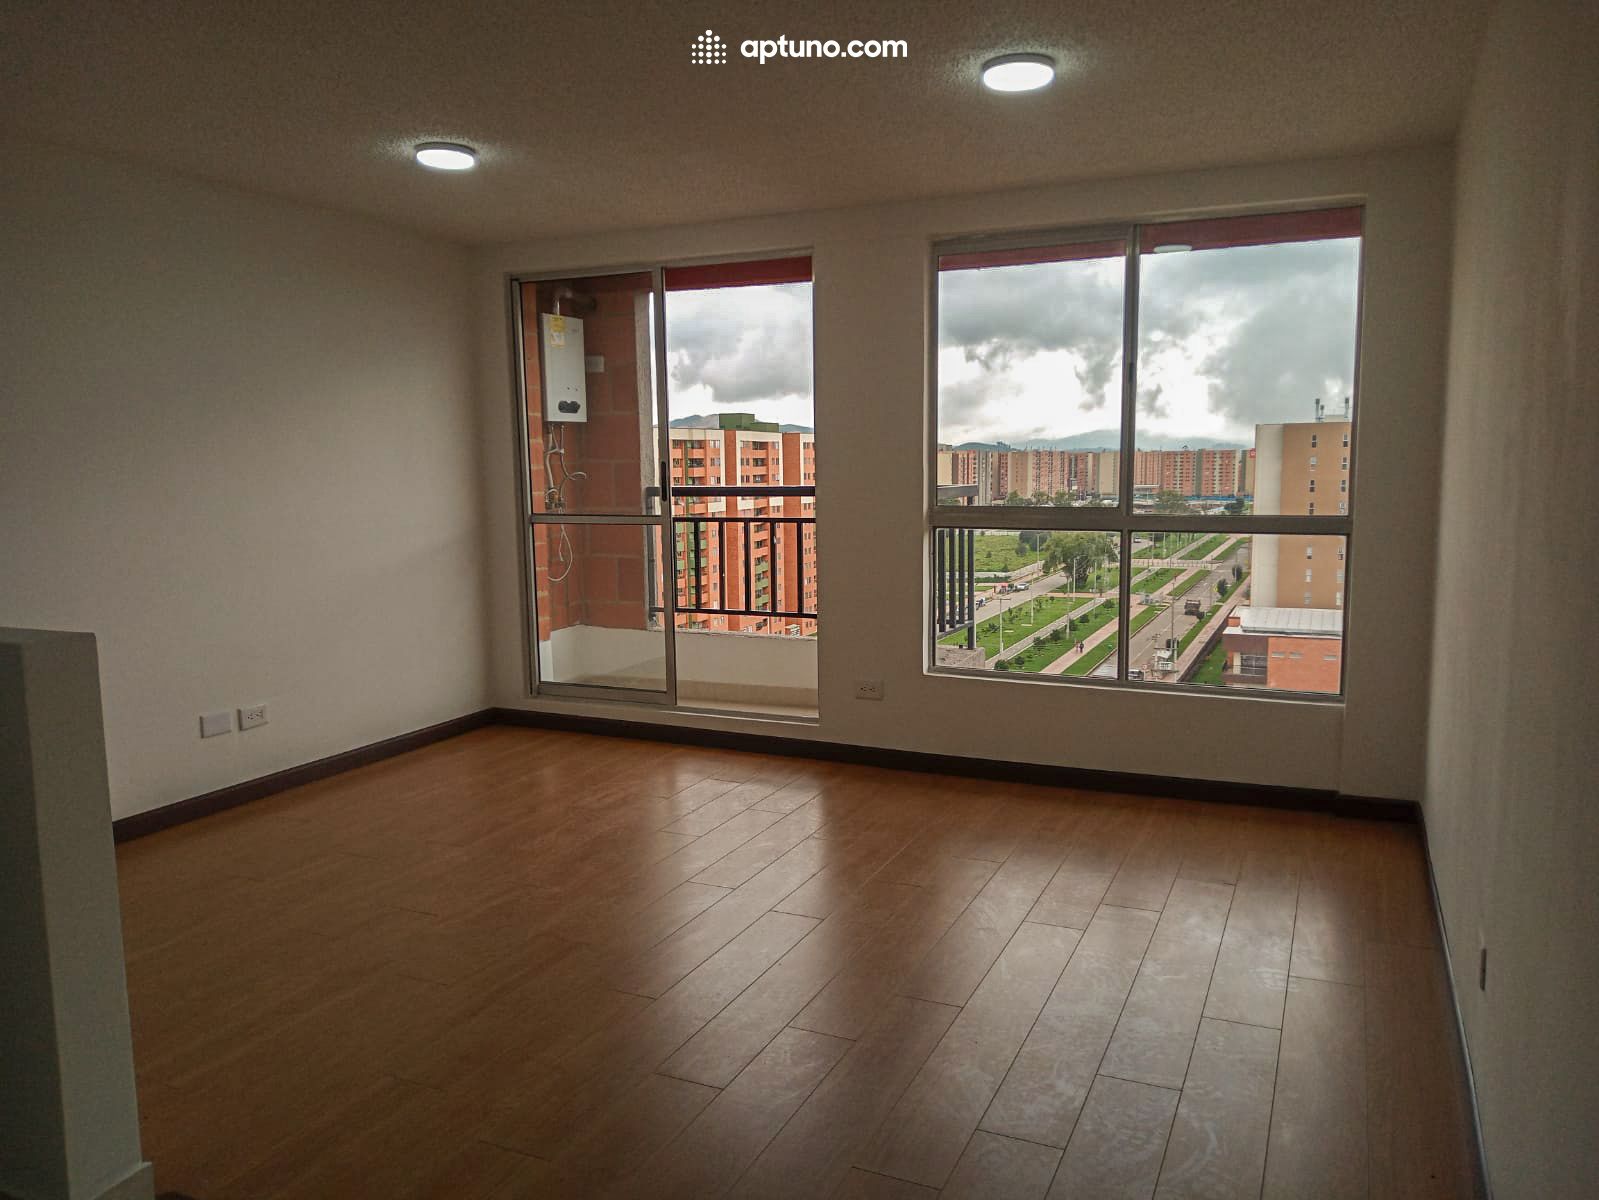 Apartamento en arriendo Madrid 62 m² - $ 850.000